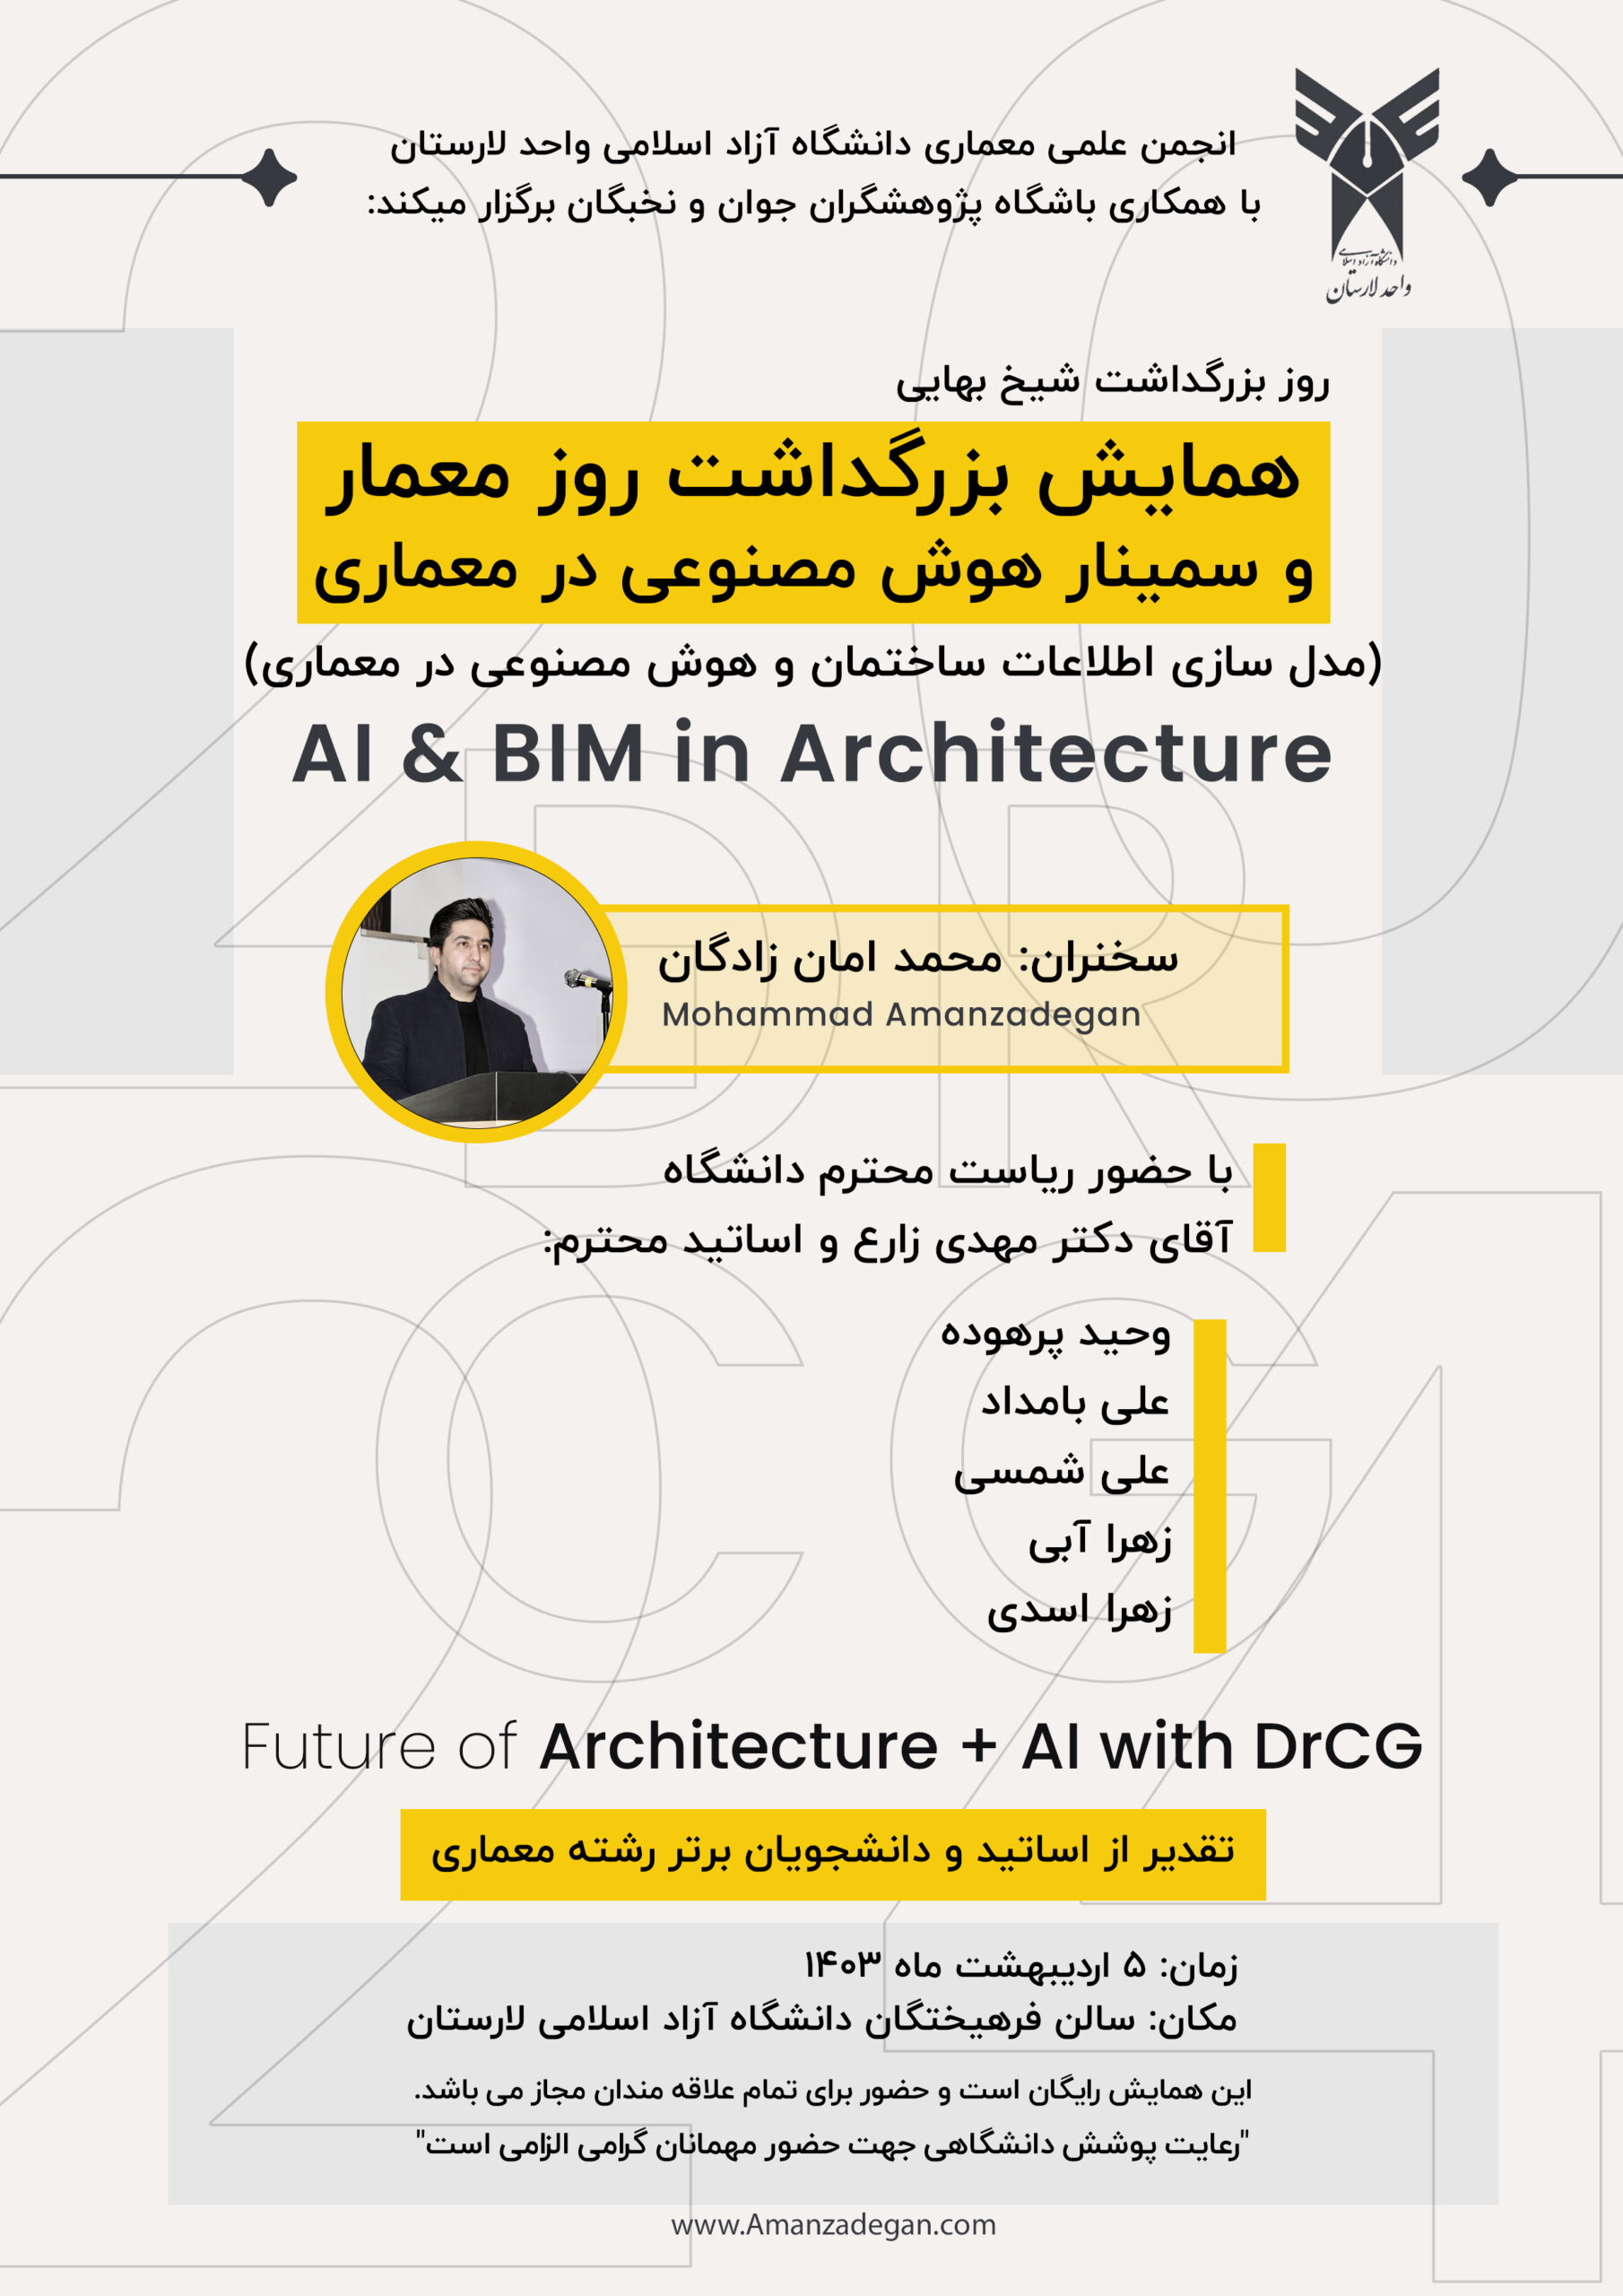 سمینار BIM و هوش مصنوعی در معماری، آشنایی AR و VR – روز معمار – دانشگاه آزاد لارستان